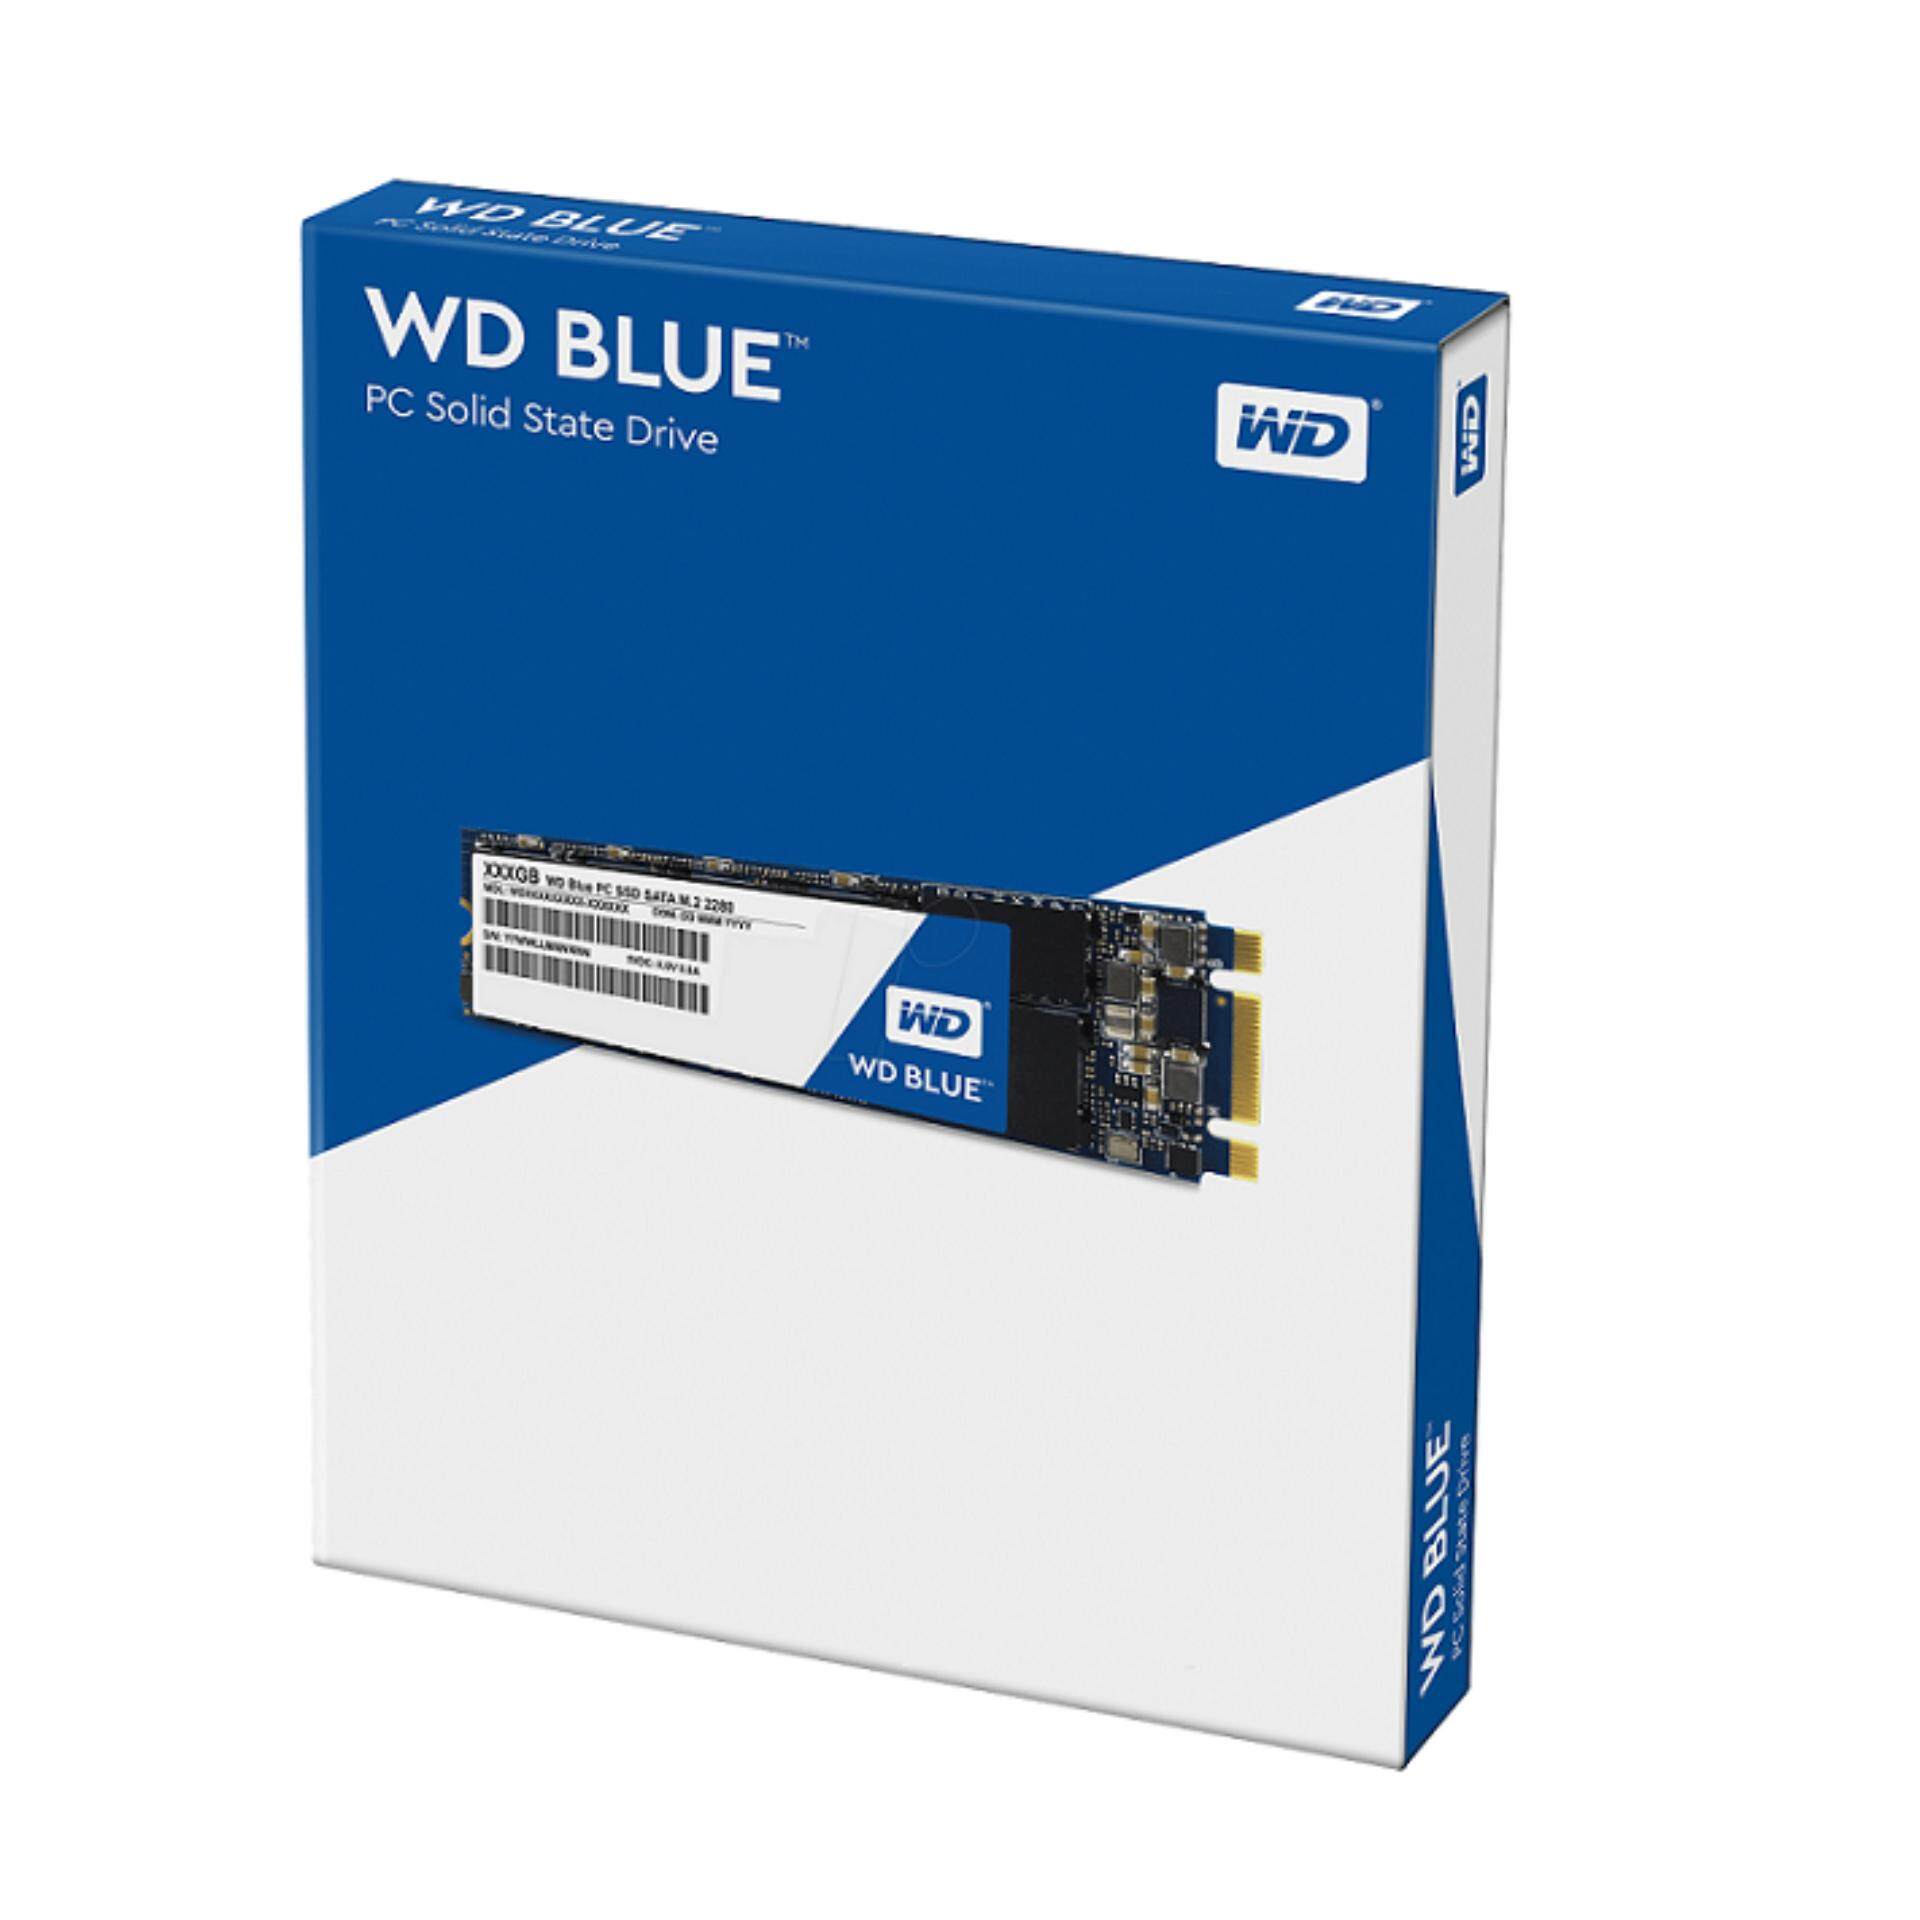 Wds100t2b0a. SSD m2 WD Blue 1tb. WD wds100t2b0b. SSD 1 TB M.2 2280 B&M 6gb/s WD Blue <wds100t2b0b> 3d TLC. Western Digital WD Blue SATA 1 ТБ M.2 wds100t2b0b.